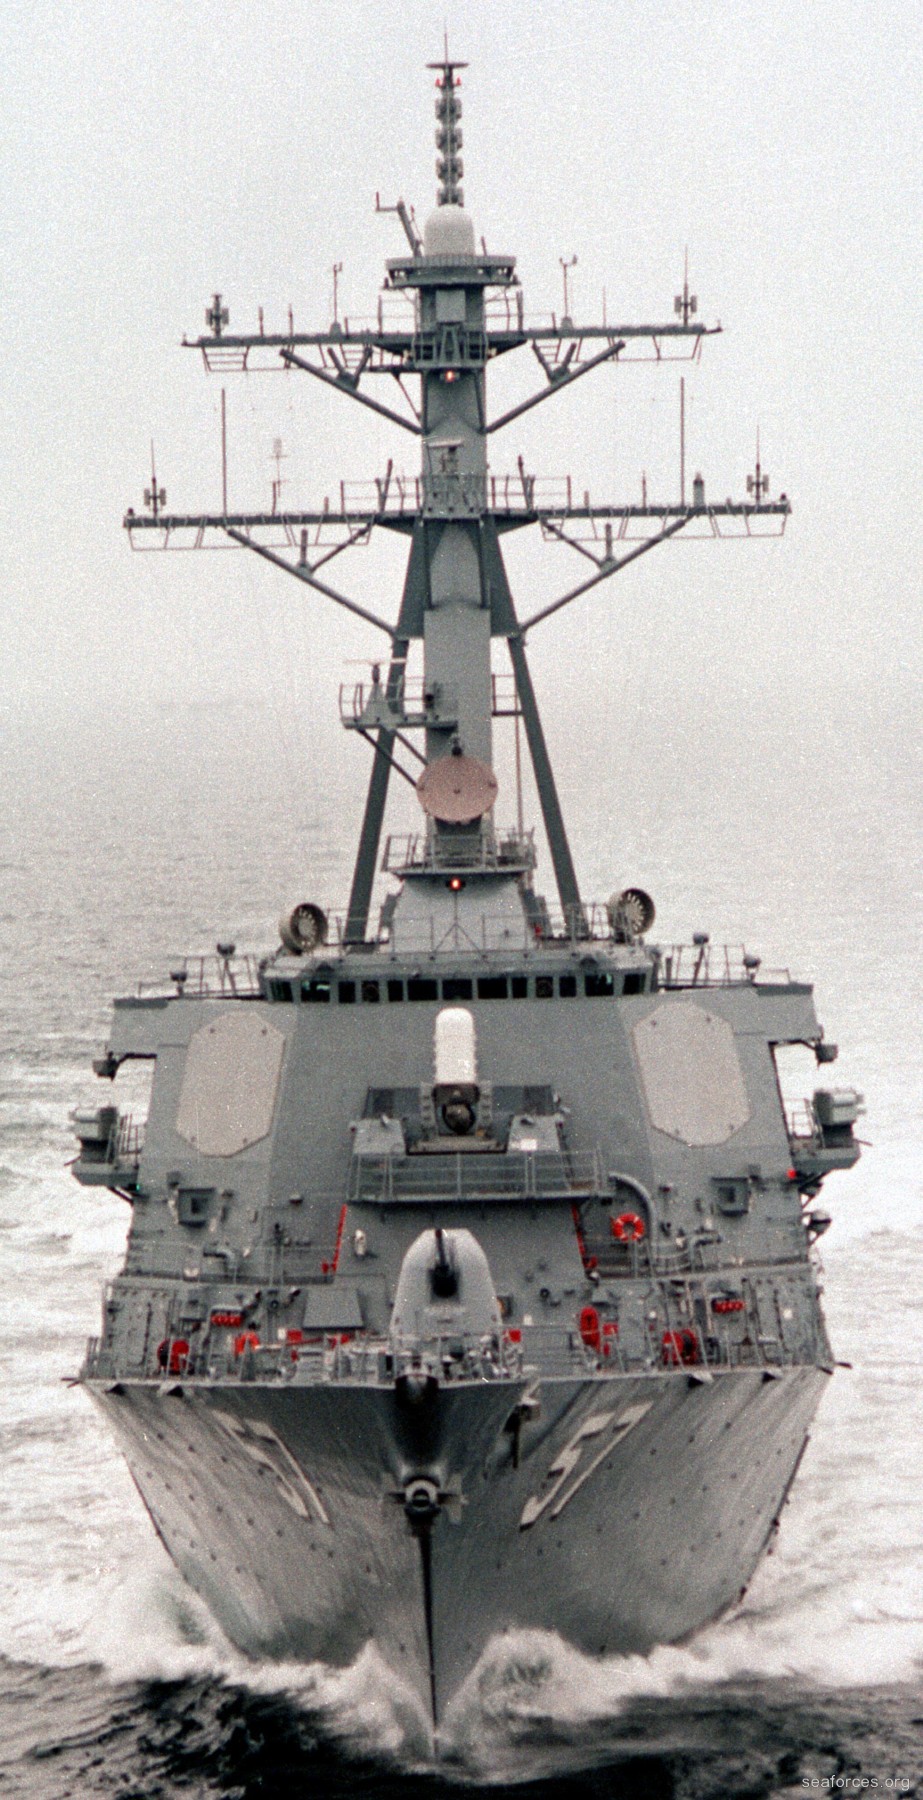 ddg-57 uss mitscher guided missile destroyer us navy 80